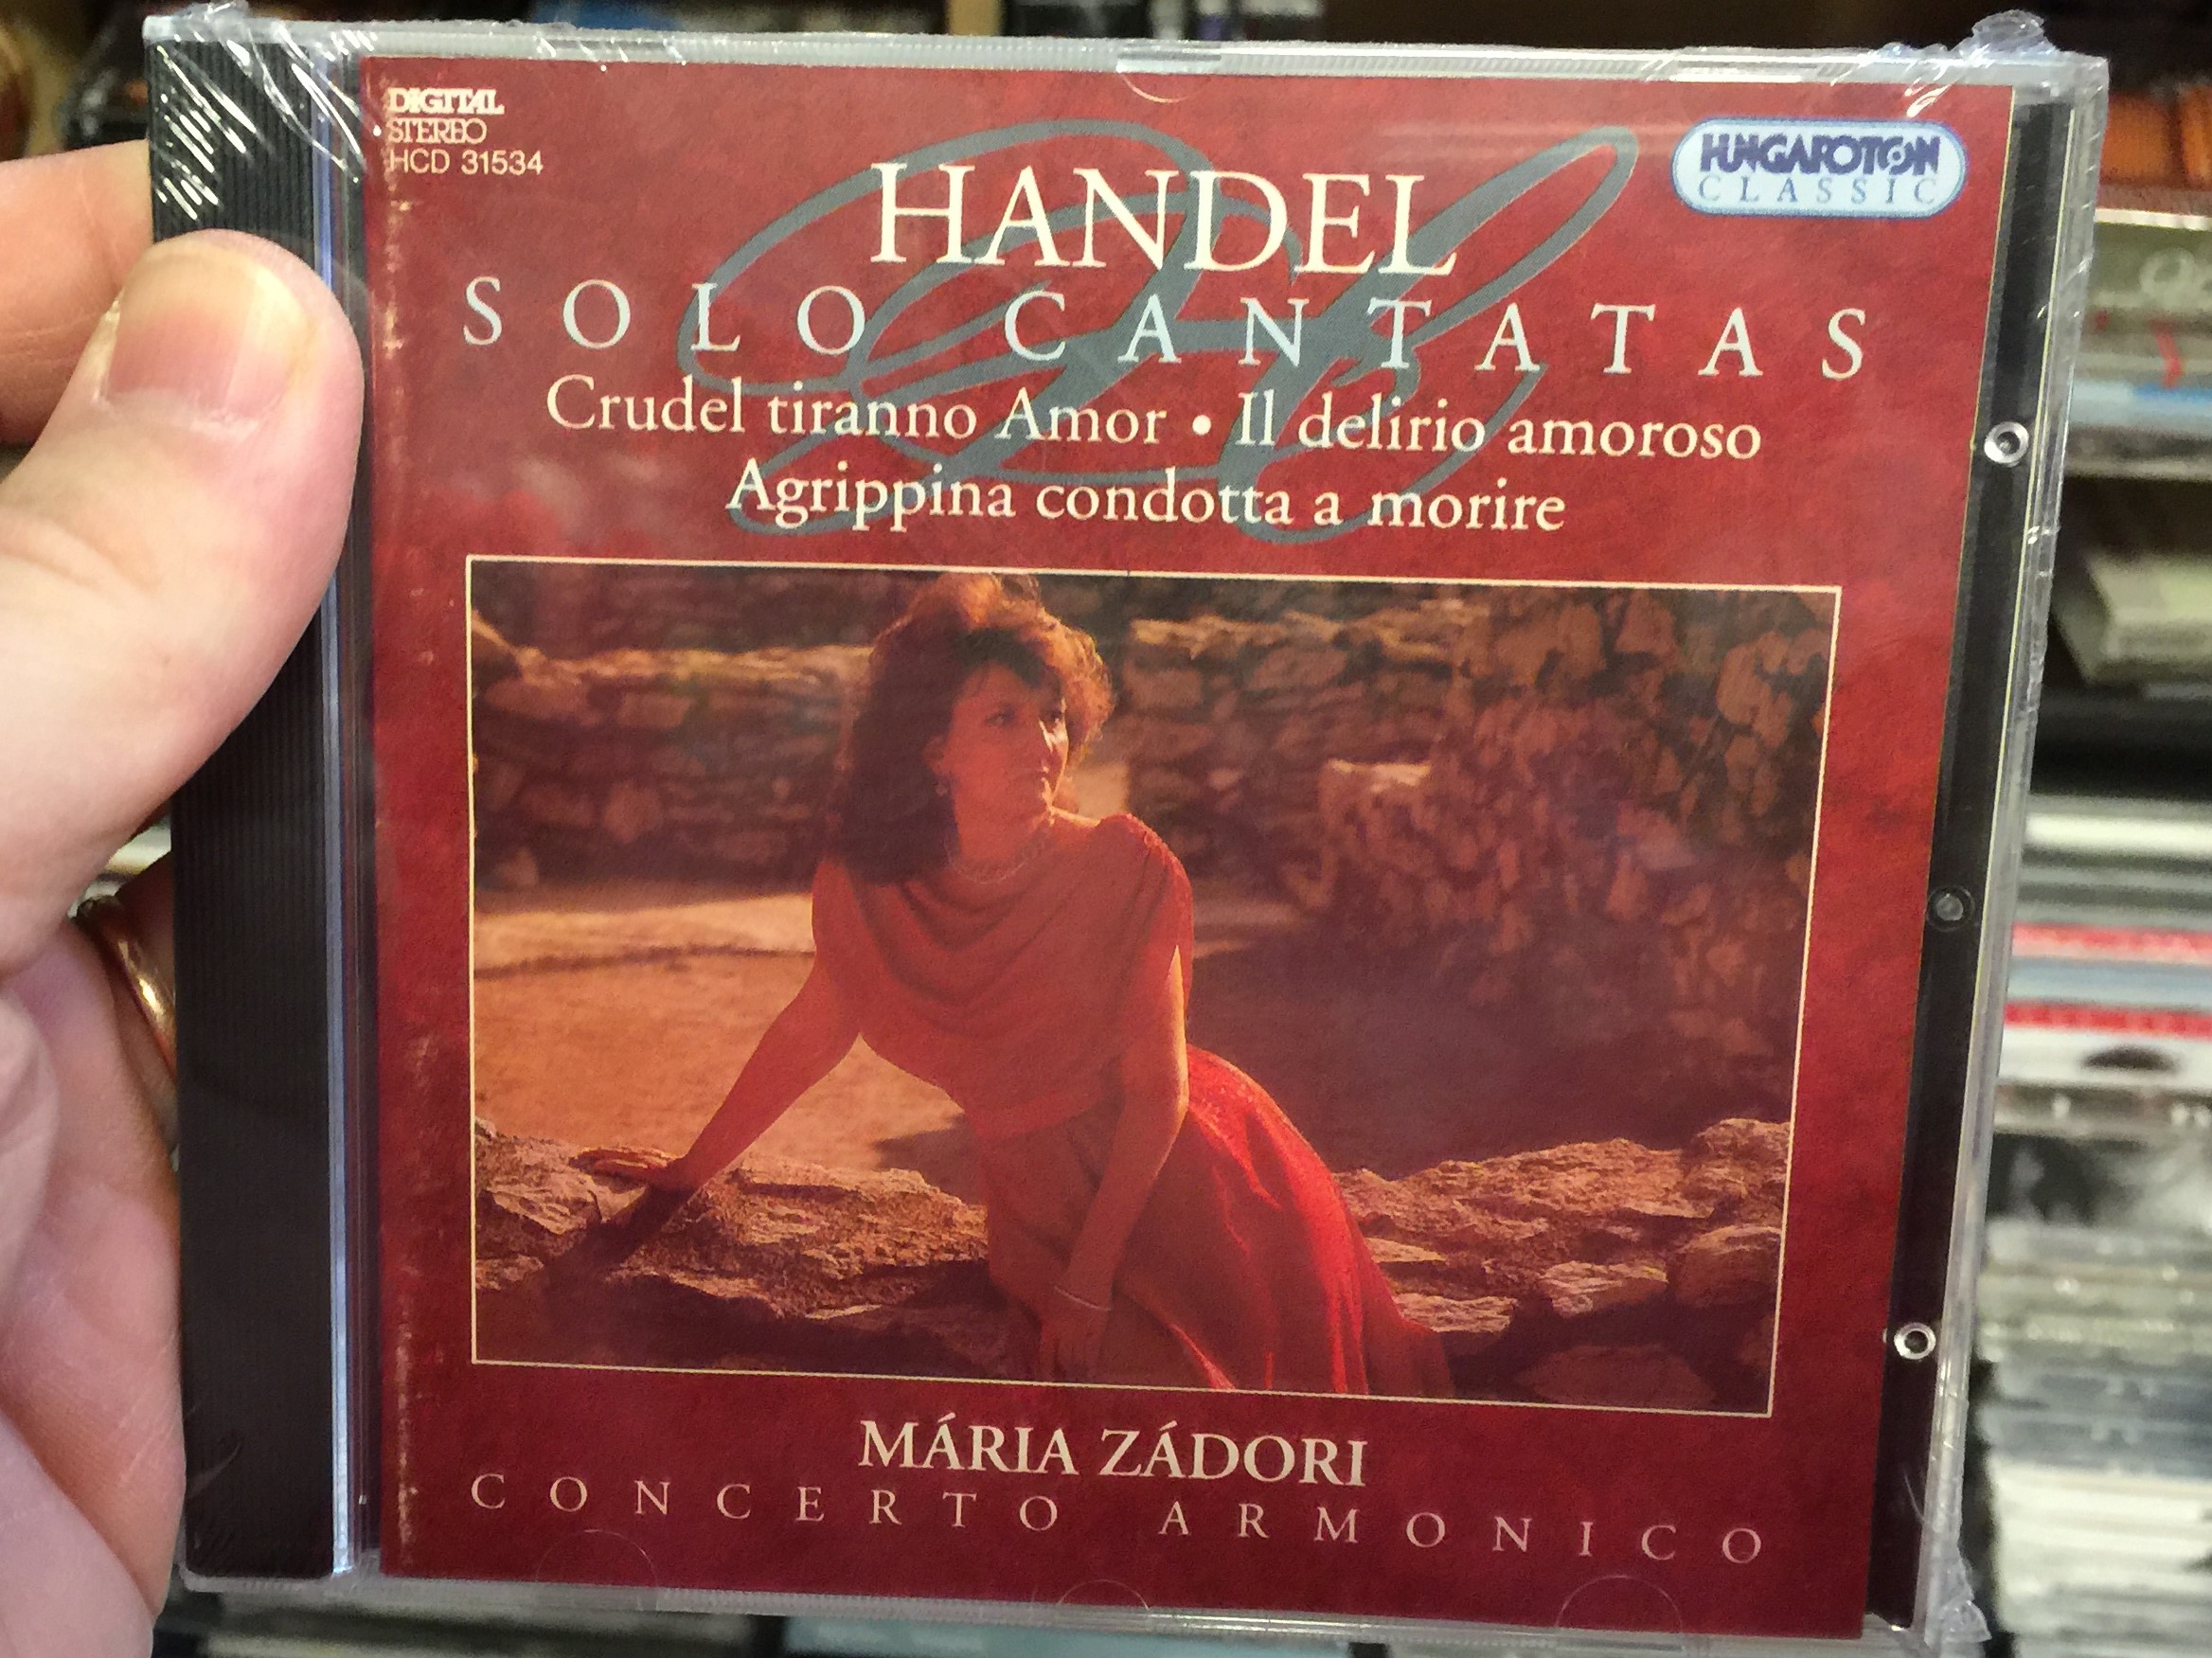 handel-solo-cantatas-crudel-tiranno-amor-il-delirio-amoroso-agrippina-condotta-a-morire-maria-zadori-concerto-armonico-hungaroton-classic-audio-cd-1995-stereo-hcd-31534-1-.jpg